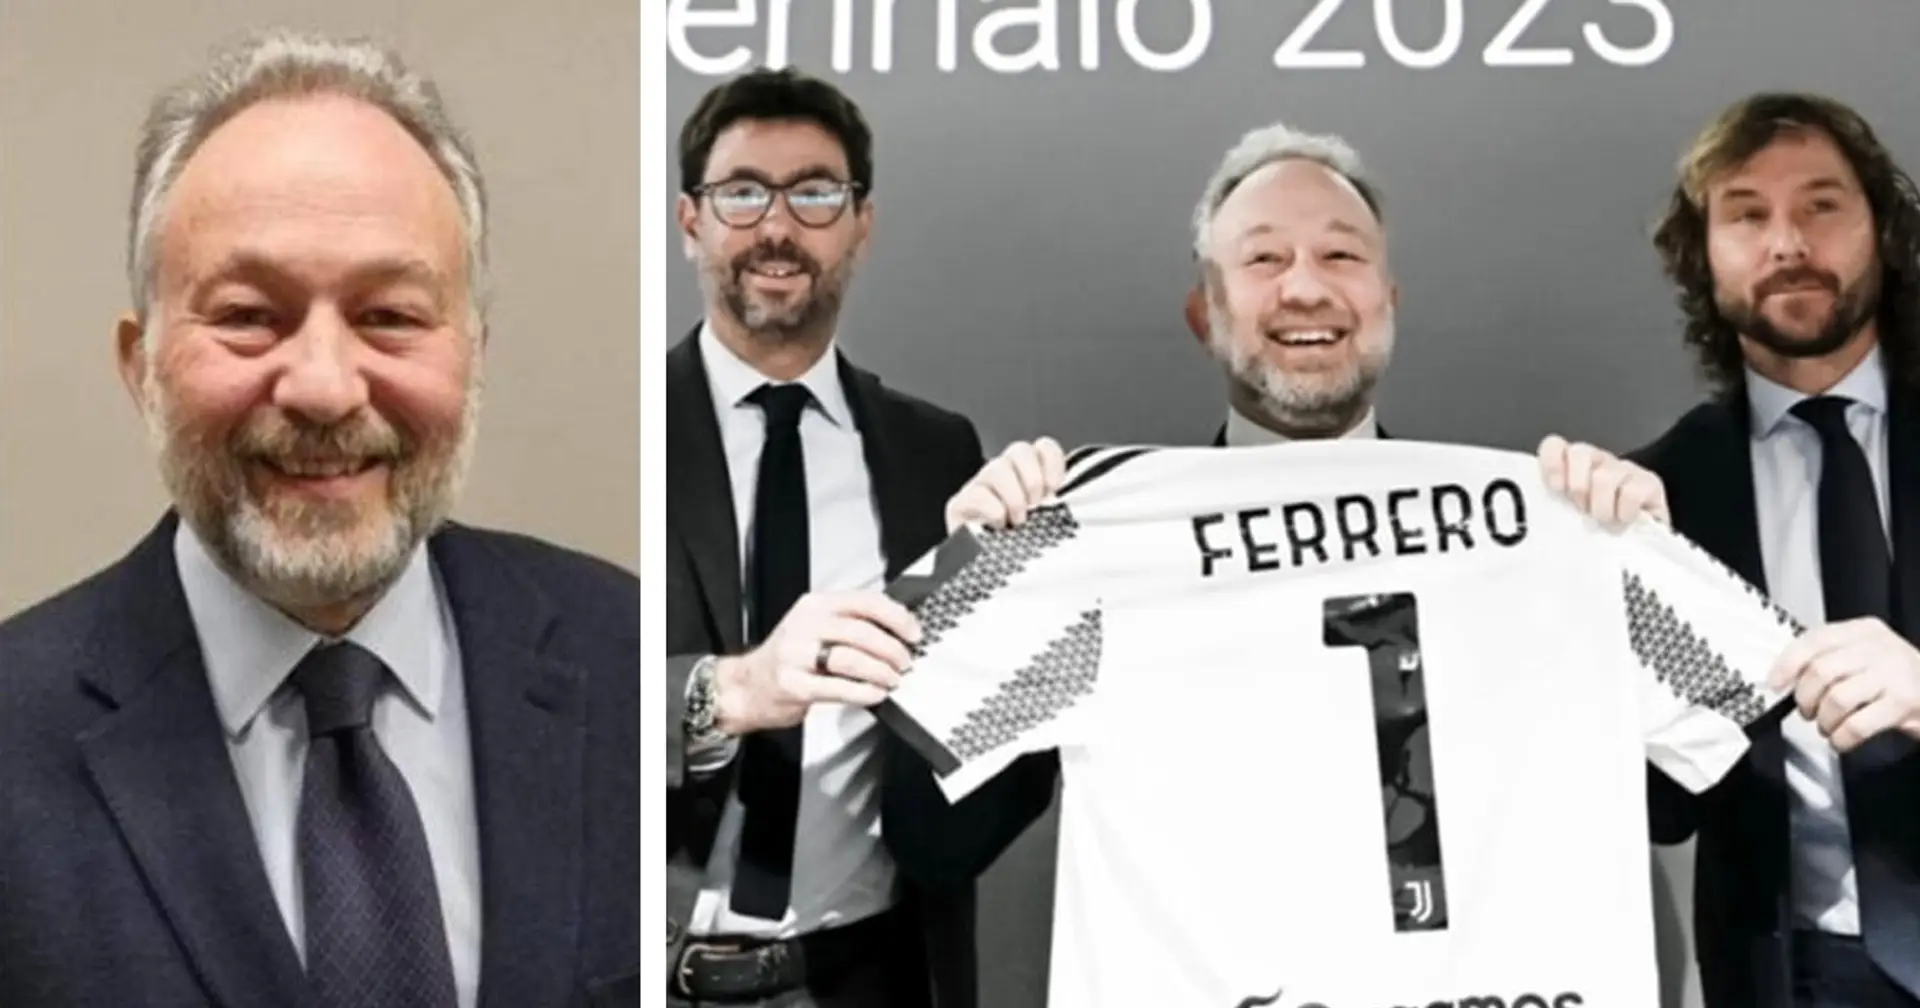 Il neo presidente Ferrero lancia un importante messaggio a tutti i detrattori e nemici che vogliono vedere fallire la Juventus